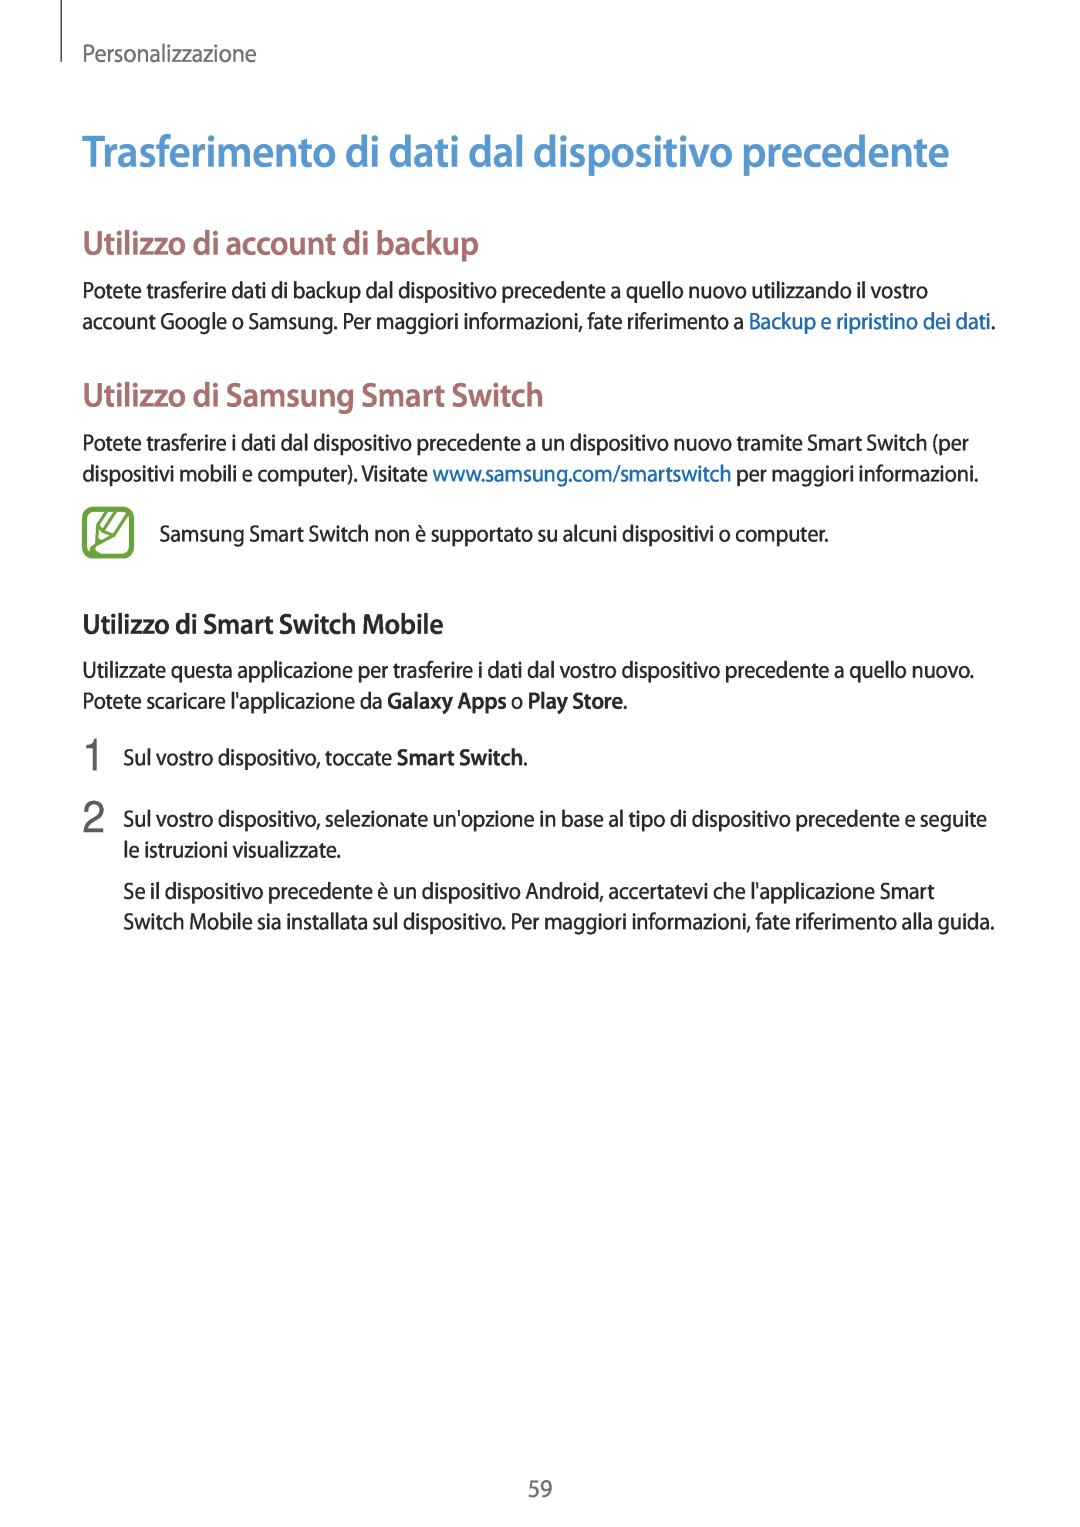 Samsung SM-T700NZWAITV Trasferimento di dati dal dispositivo precedente, Utilizzo di account di backup, Personalizzazione 